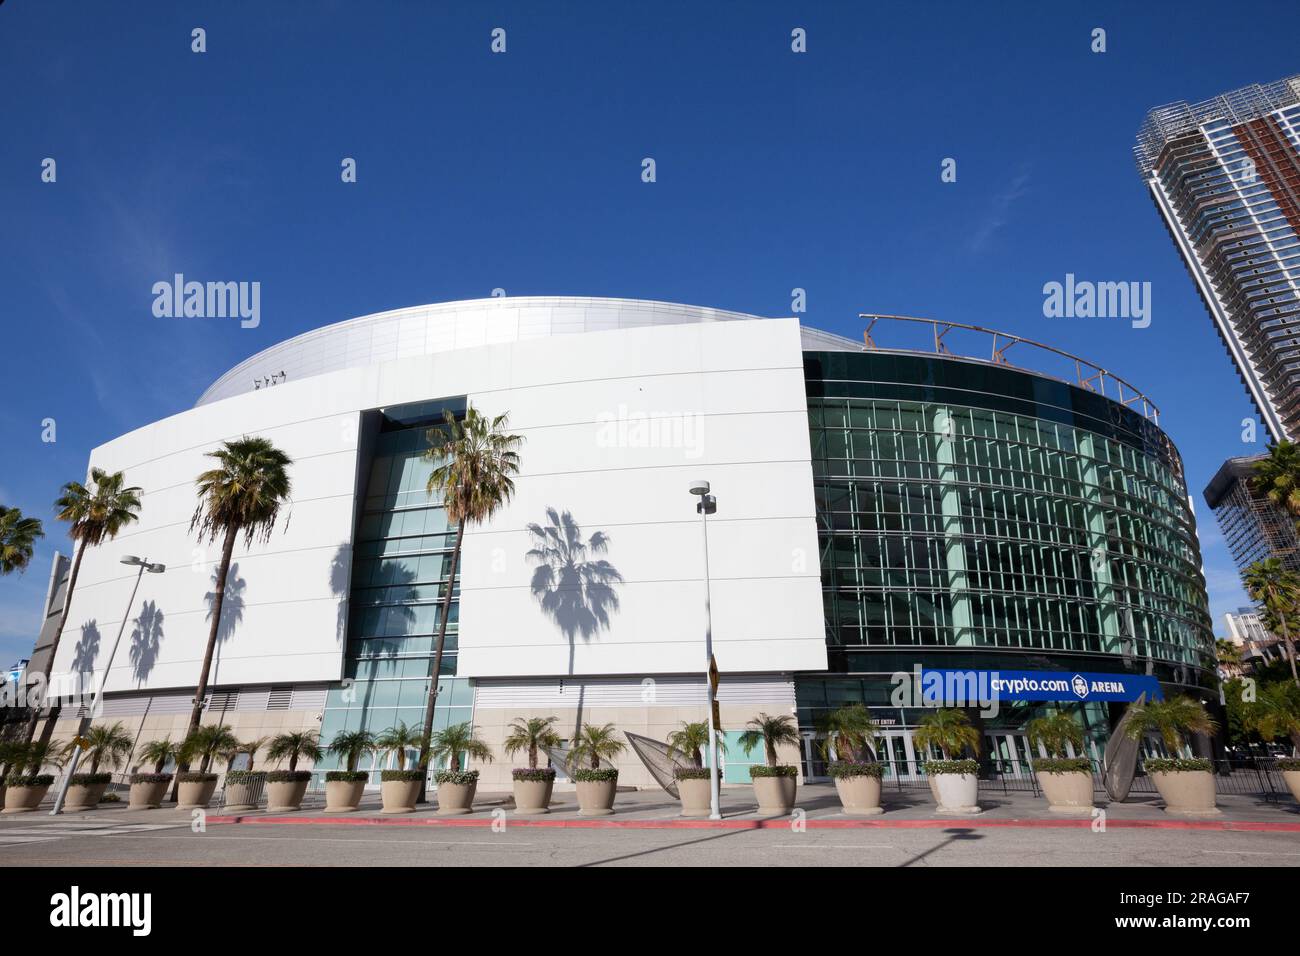 Crypto.com Arena a Los Angeles Vive nel centro di Los Angeles, CALIFORNIA, USA Foto Stock